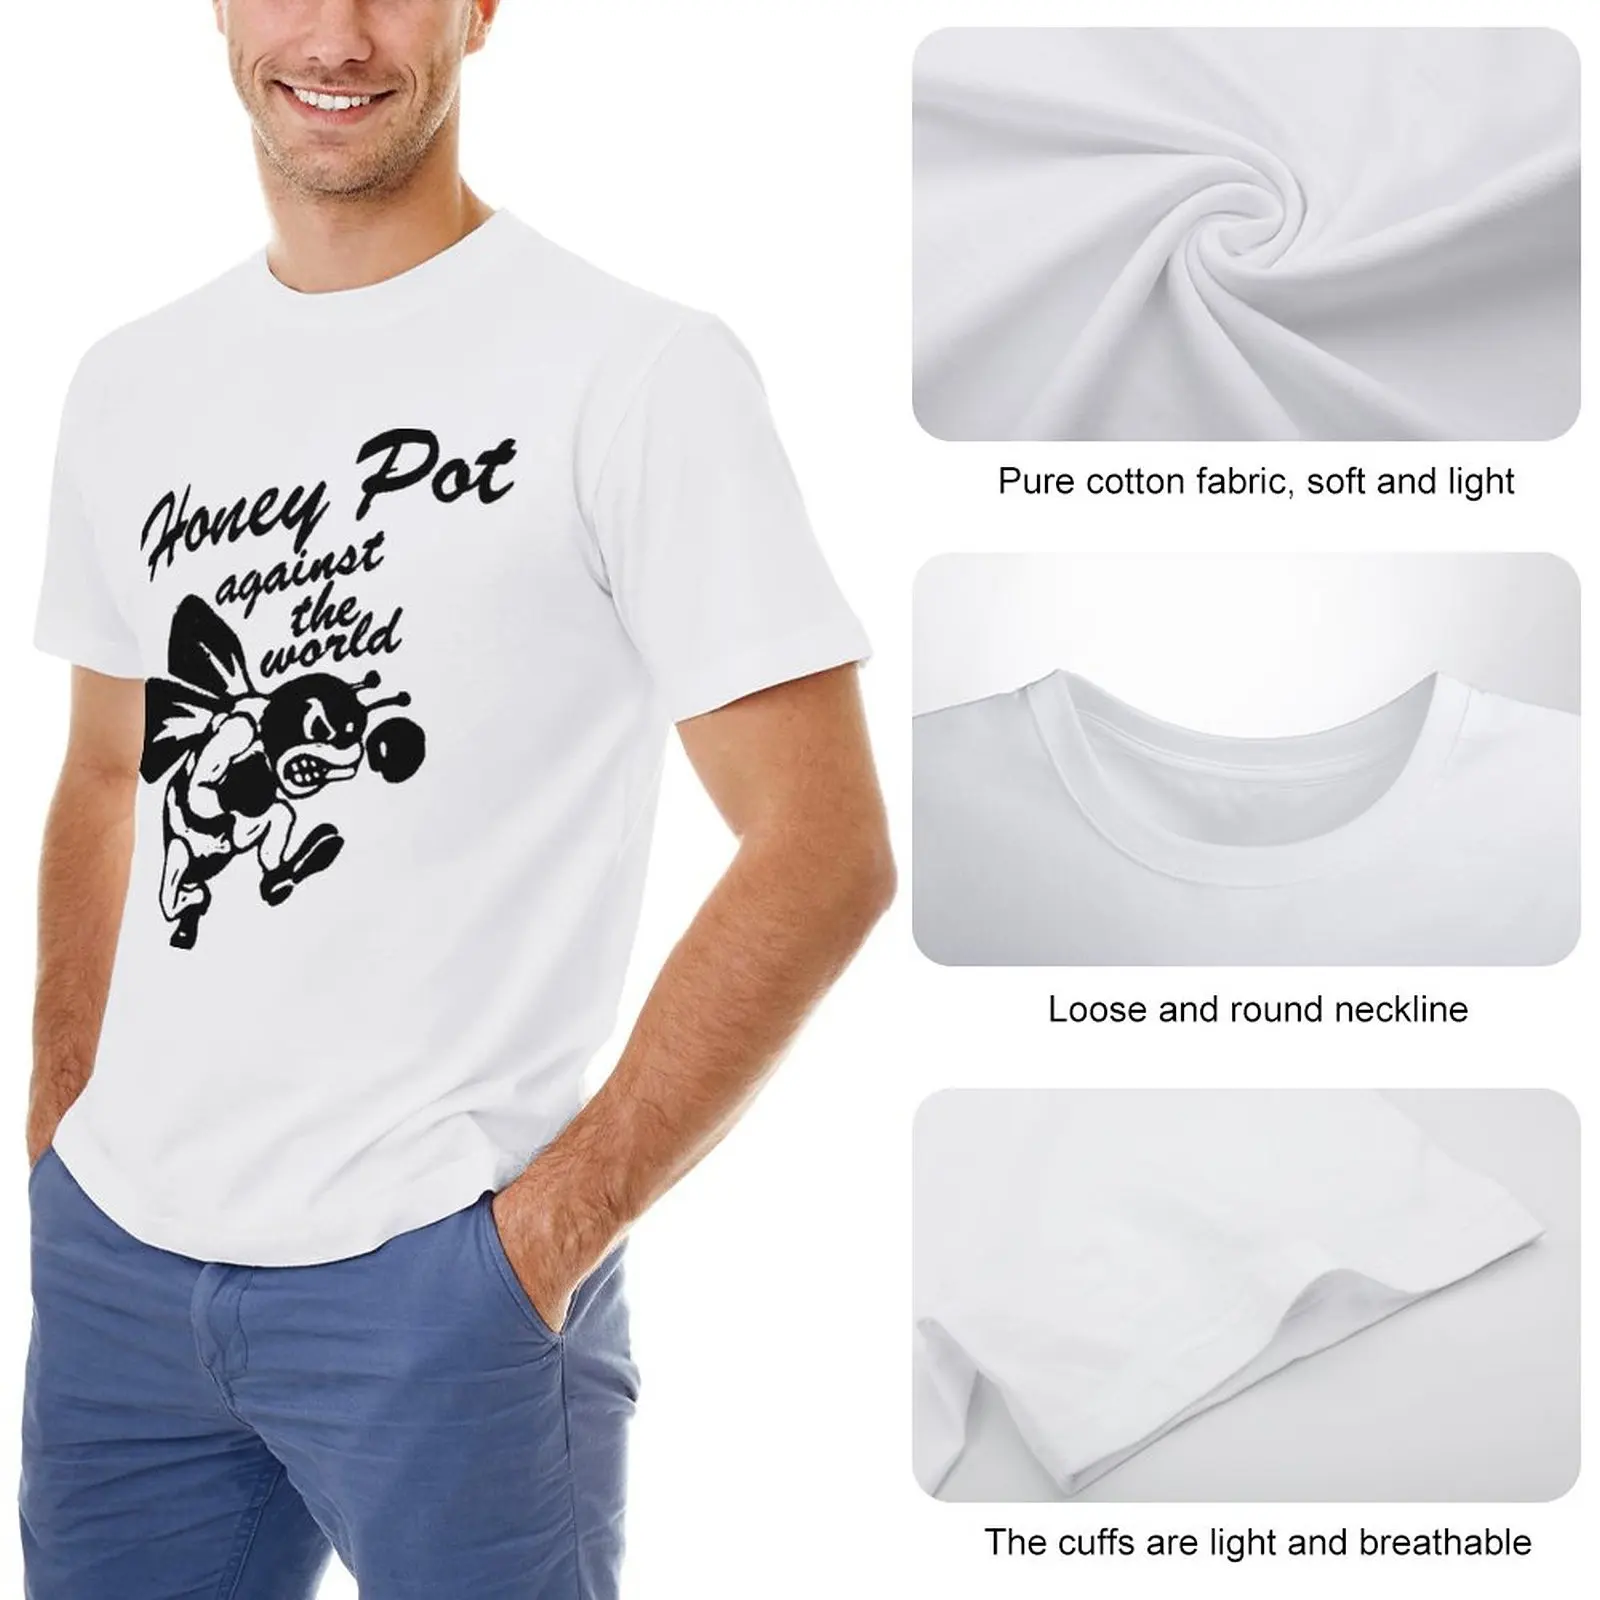 Футболка Honey Pot Against the World, футболка с графикой, футболки для мальчиков, винтажная одежда, великолепная футболка, футболки для мужчин, хлопок Изображение 1